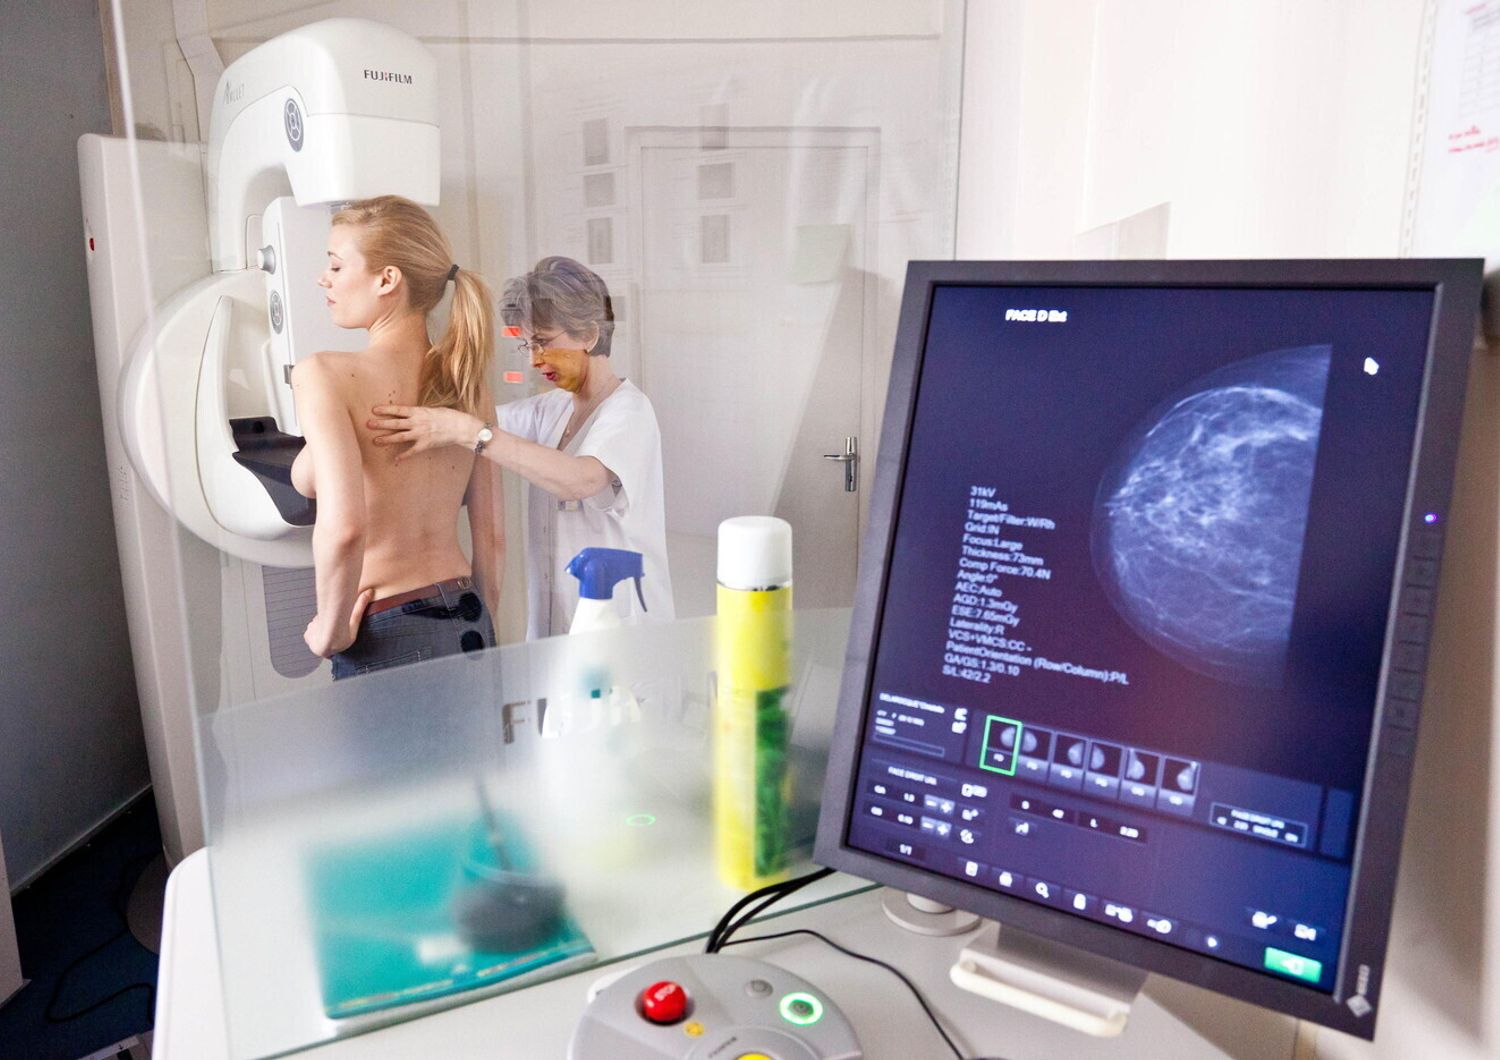 Tumore al seno - mammografia digitale (Agf)